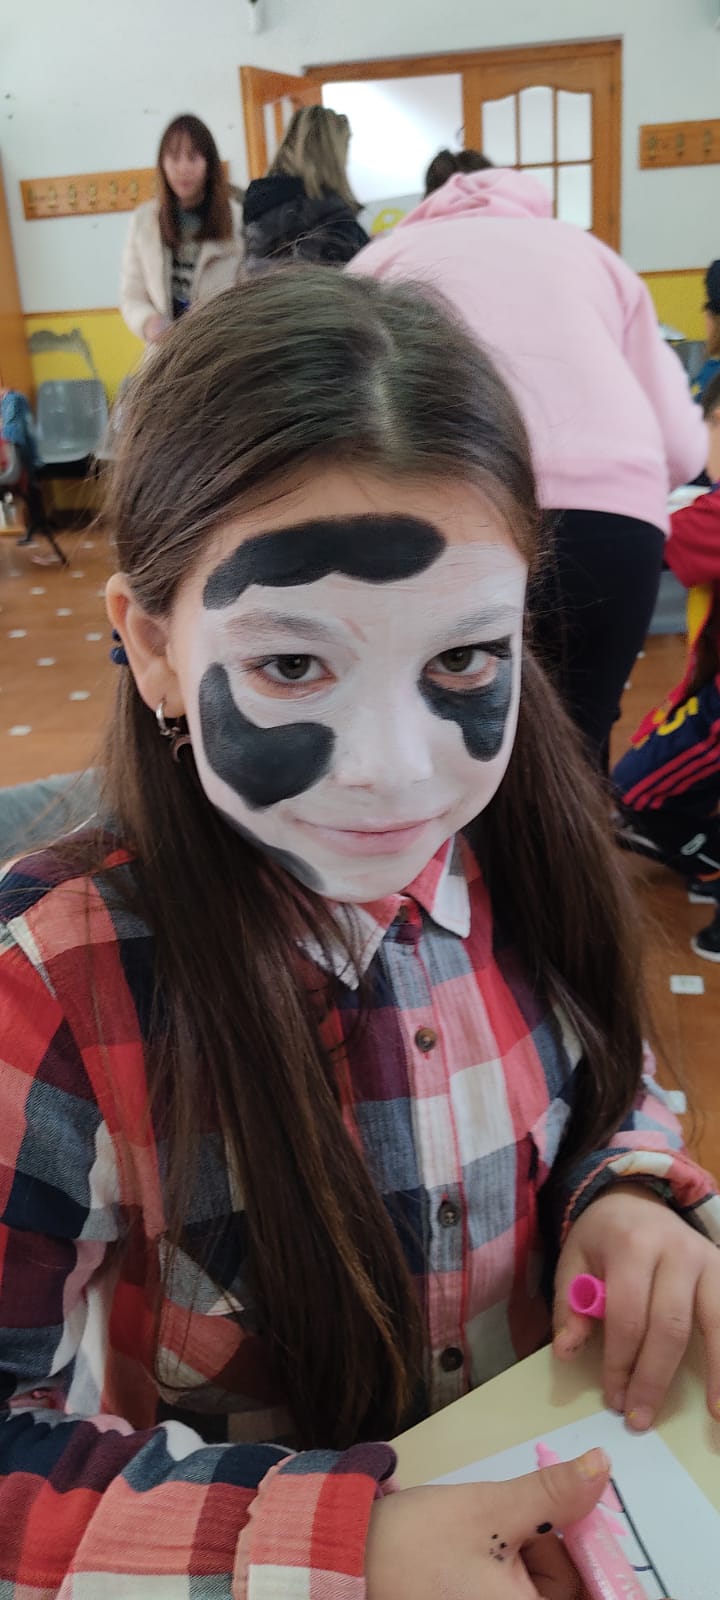 Maquillaje infantil de carnaval con piel de vaca en la cara, en niña vestida de baquera.